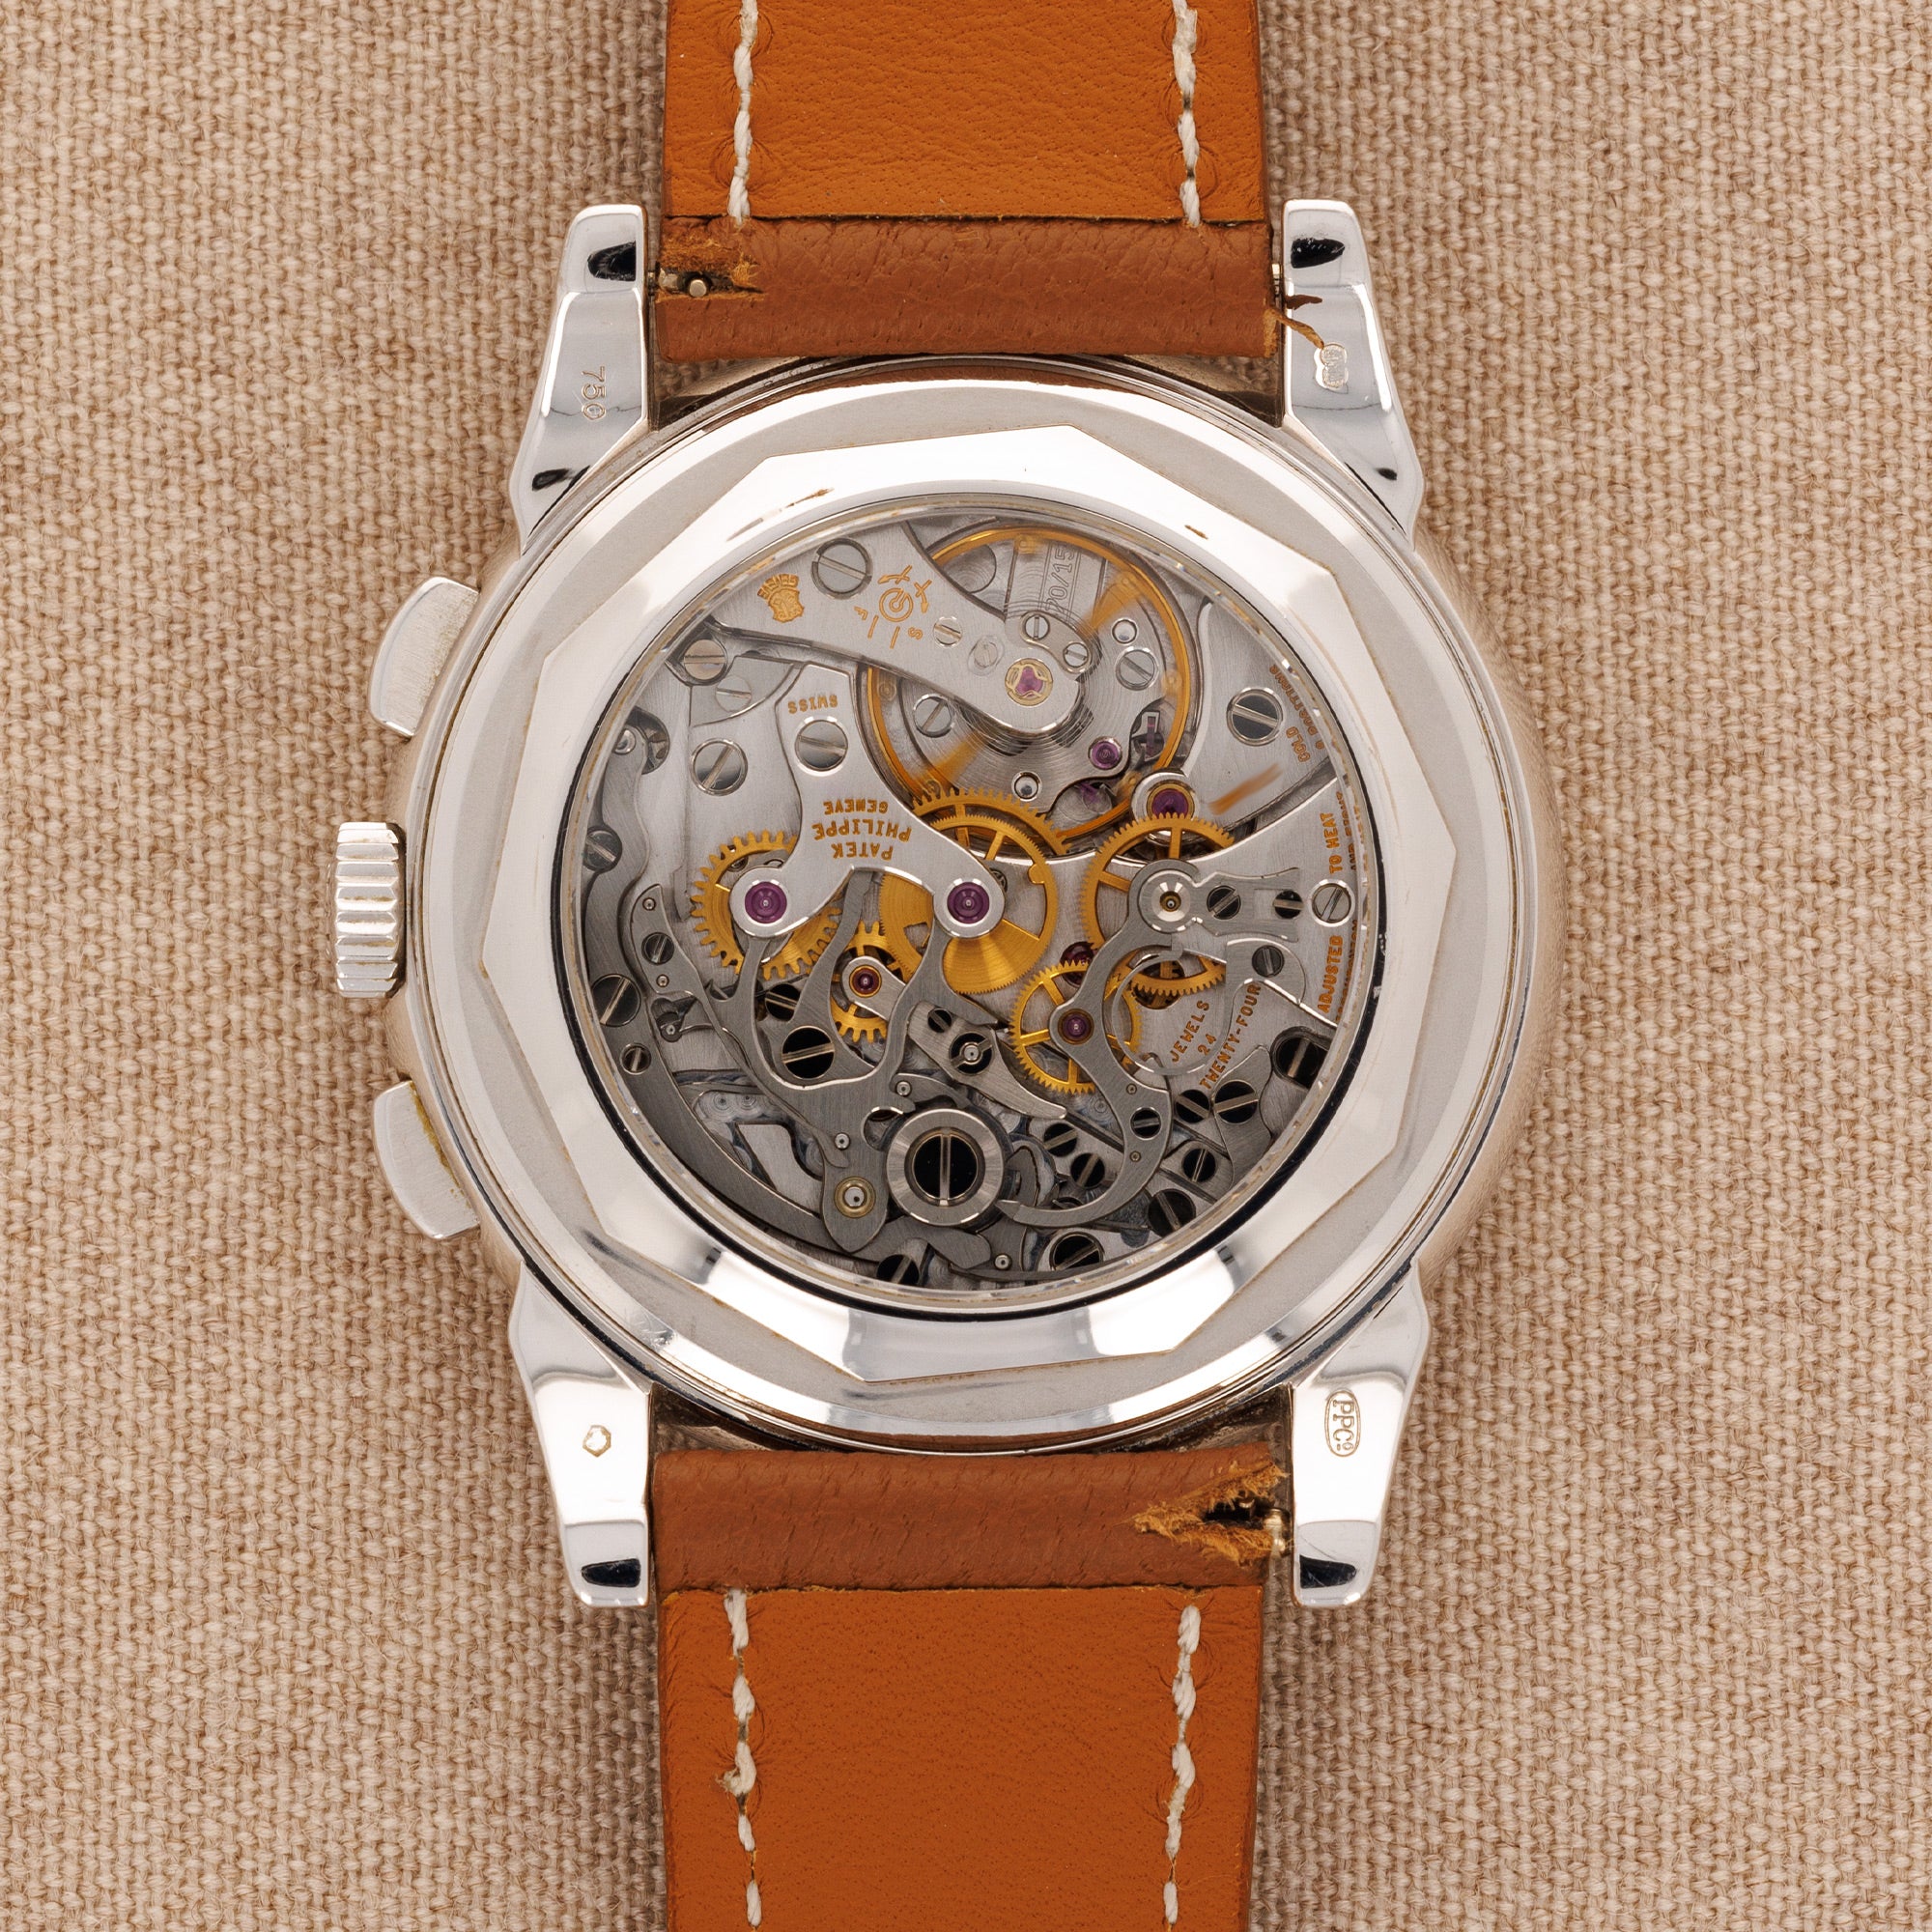 Patek Philippe White Gold Perpetual Calendar Watch Ref. 5970